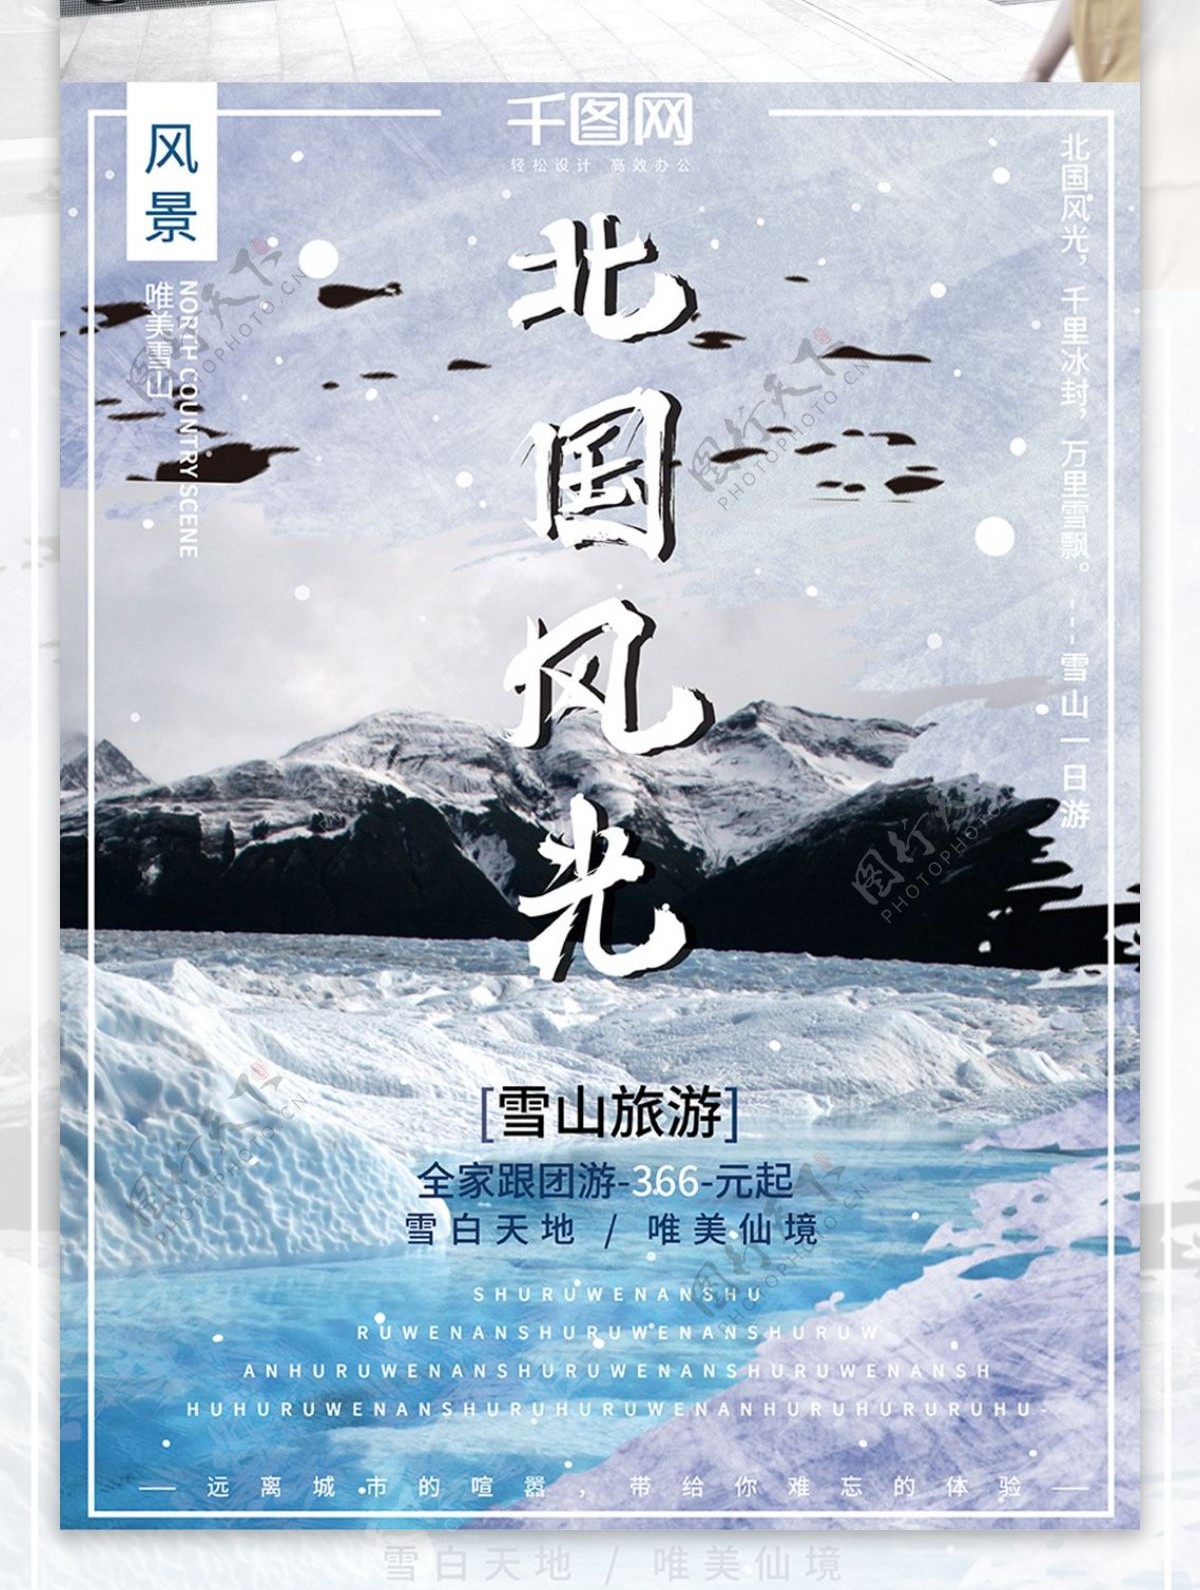 简约大气干净雪山旅游北国风光旅行海报